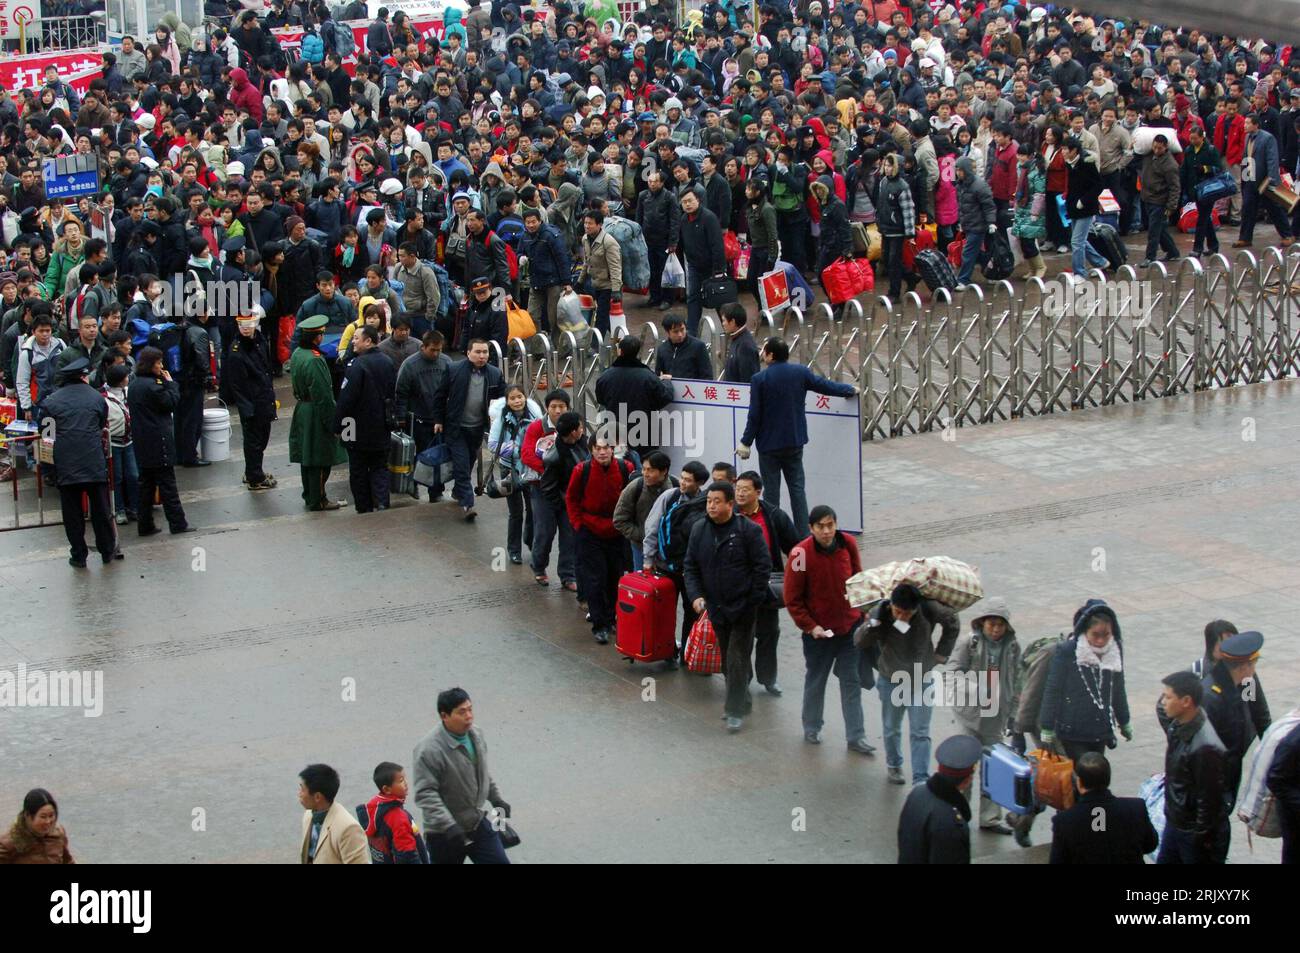 Bildnummer: 52379530  Datum: 27.01.2008  Copyright: imago/Xinhua Tausende Passagiere warten vor dem Bahnhof von Guiyang in der chinesischen Provinz Guizhou - wegen heftiger Schneefälle kommt es in weiten Teilen des Landes zu einem Verkehrschaos - PUBLICATIONxNOTxINxCHN , Personen; 2008, China, Bahnhöfe, Passagier, Passagiere, Reisender, Chinese, Chinesen, Menschenmenge, Menschenmassen; , quer, Kbdig, Totale,  , Bahn, Verkehr,  , Asien Stock Photo